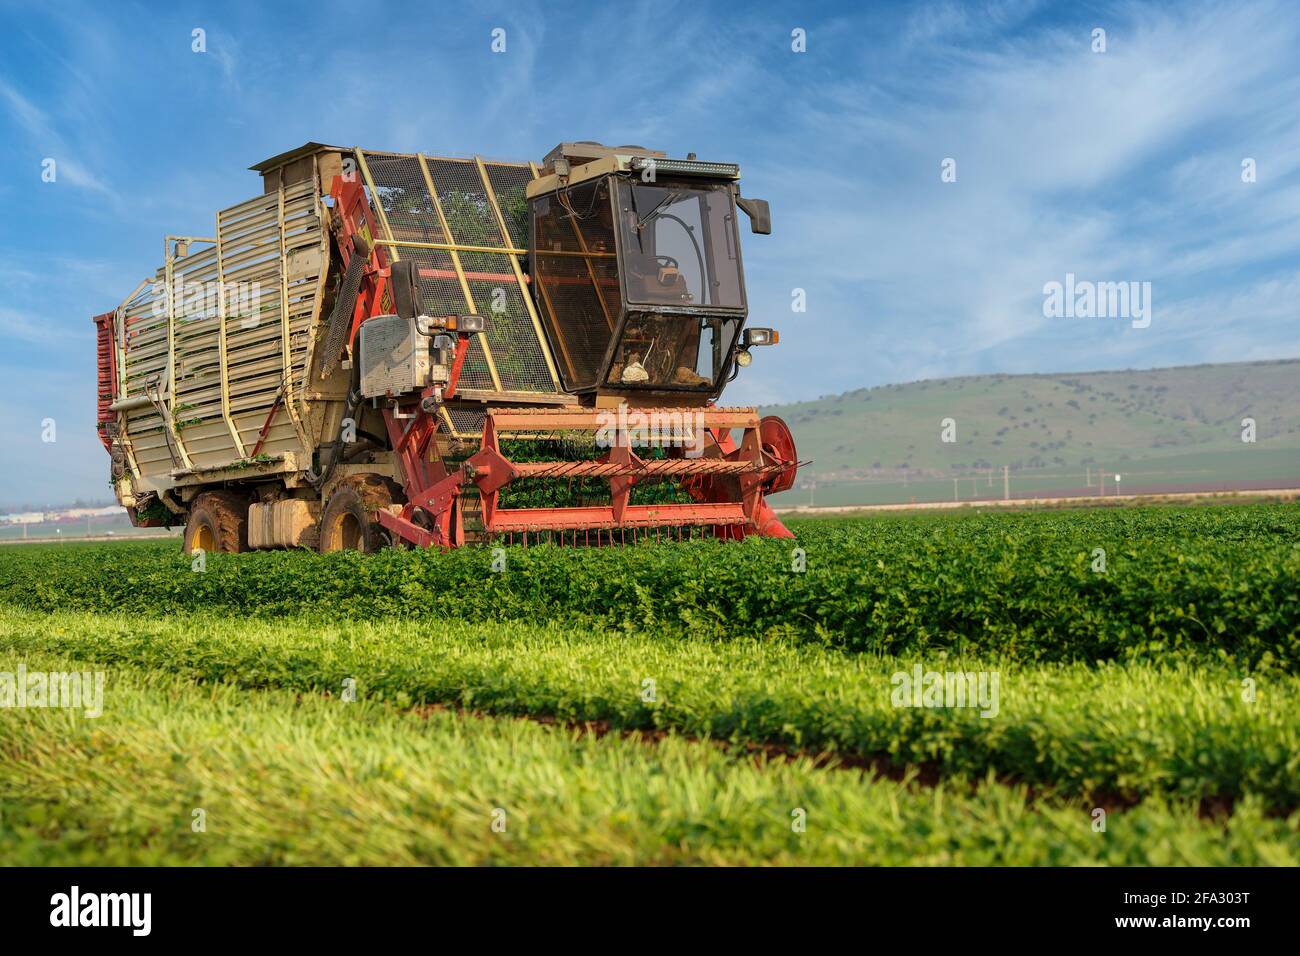 La machinerie agricole hache les herbes dans un champ agricole vert. Banque D'Images